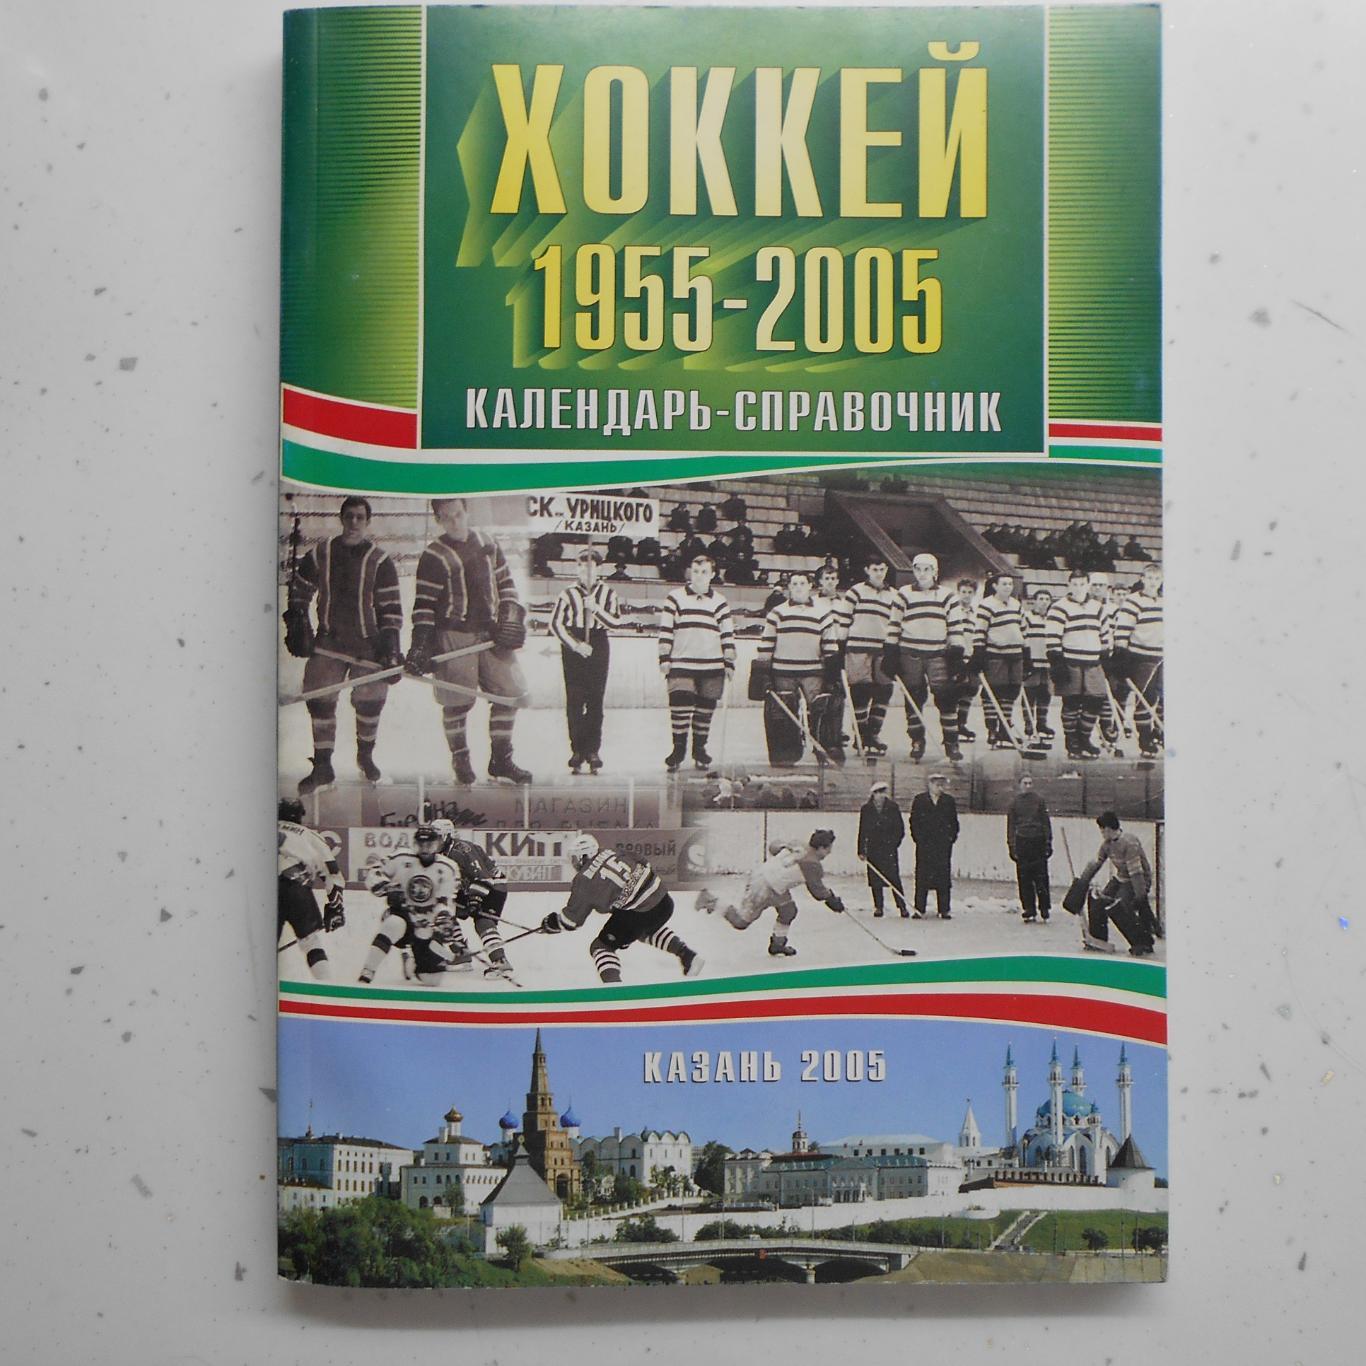 Хоккей. Казань 1955 - 2005 гг.